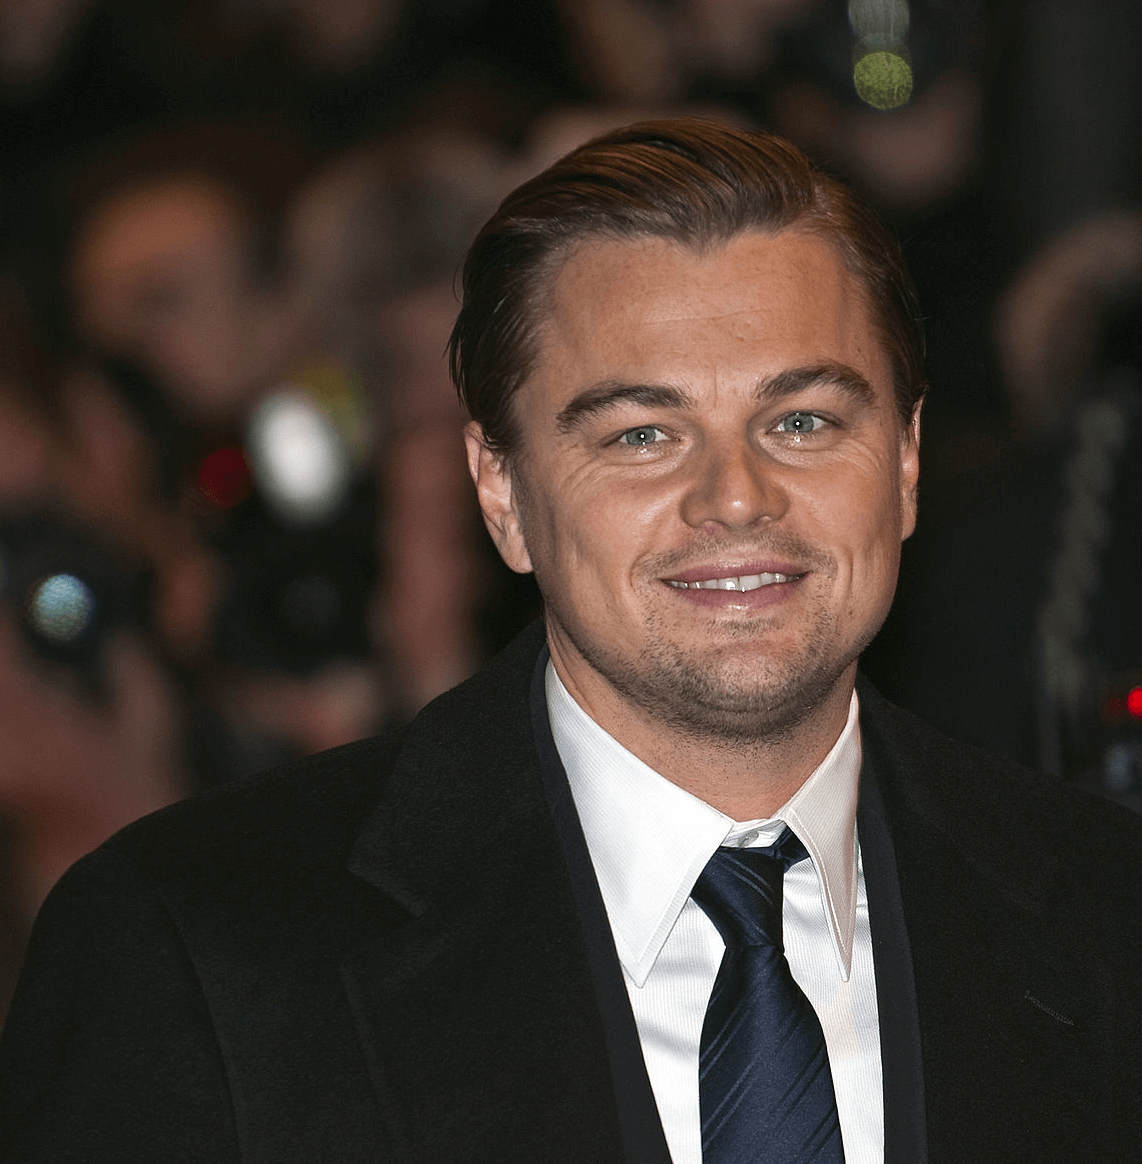 Leonardo DiCaprio smiling at the camera, 2010.